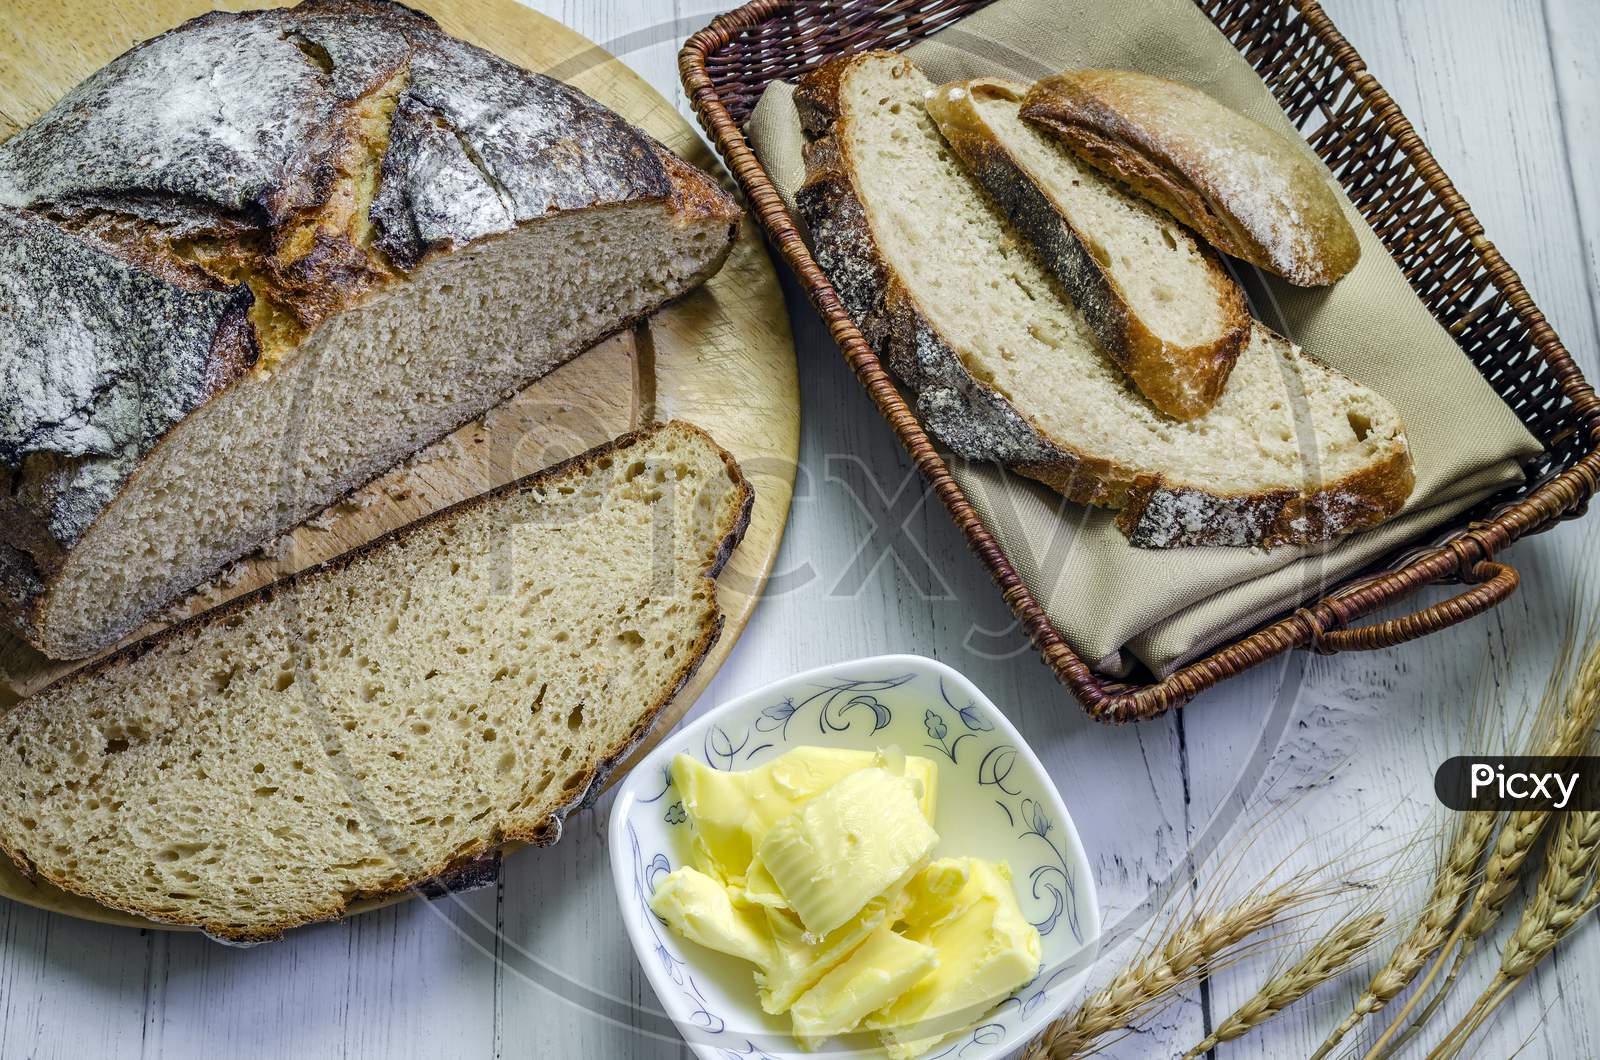 A loaf of freshly baked rye bread sliced